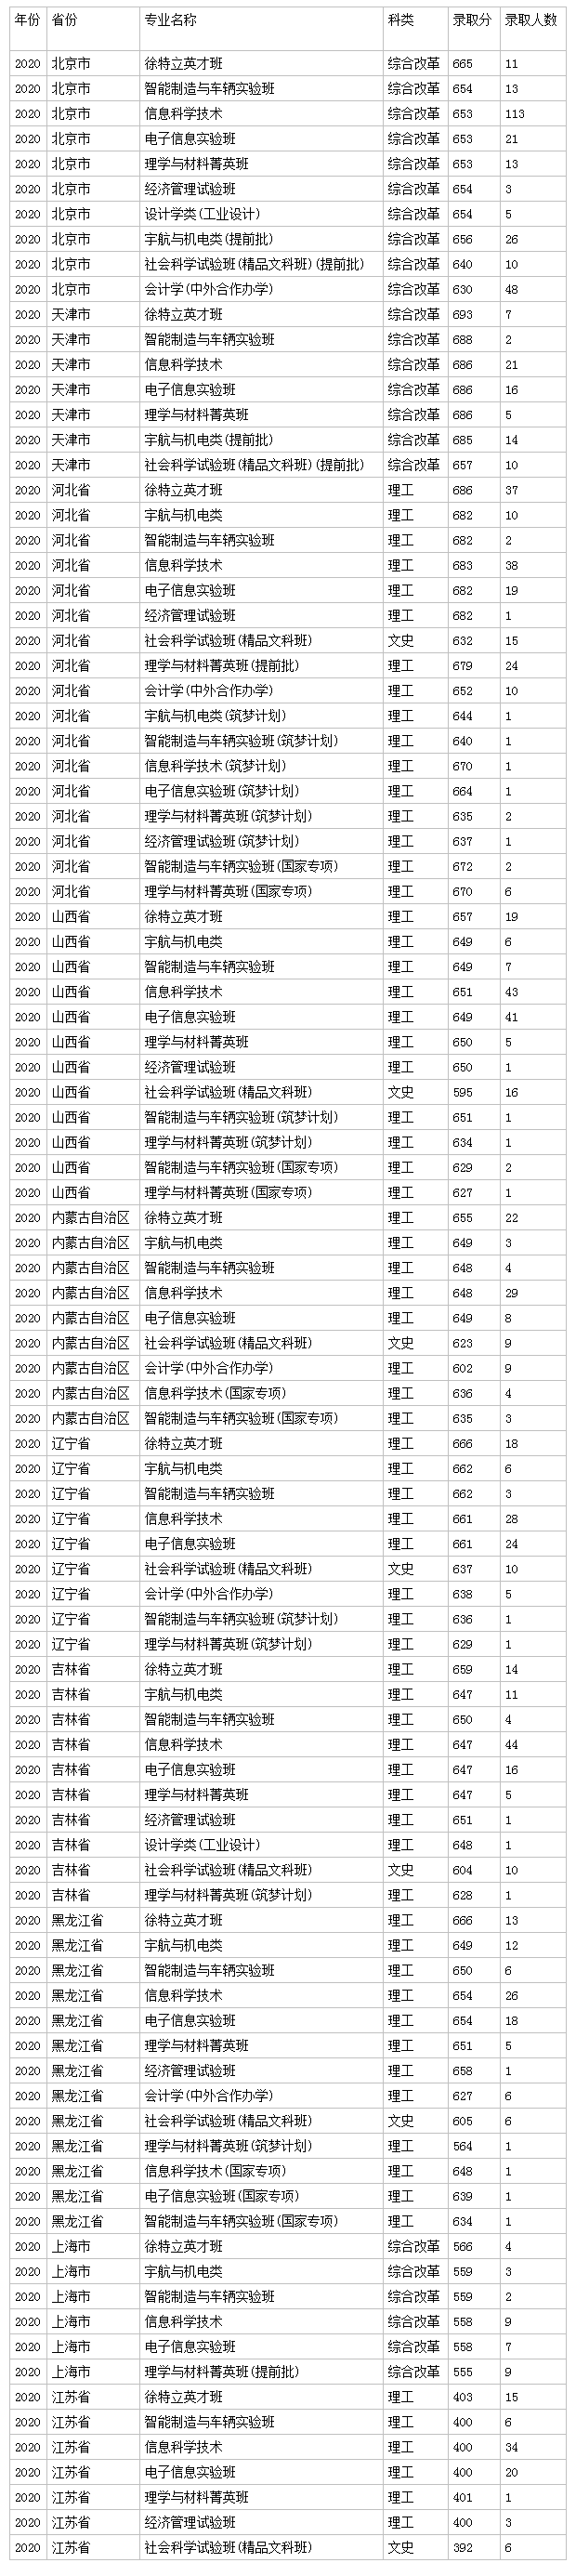 2022北京理工大学高考录取分数线